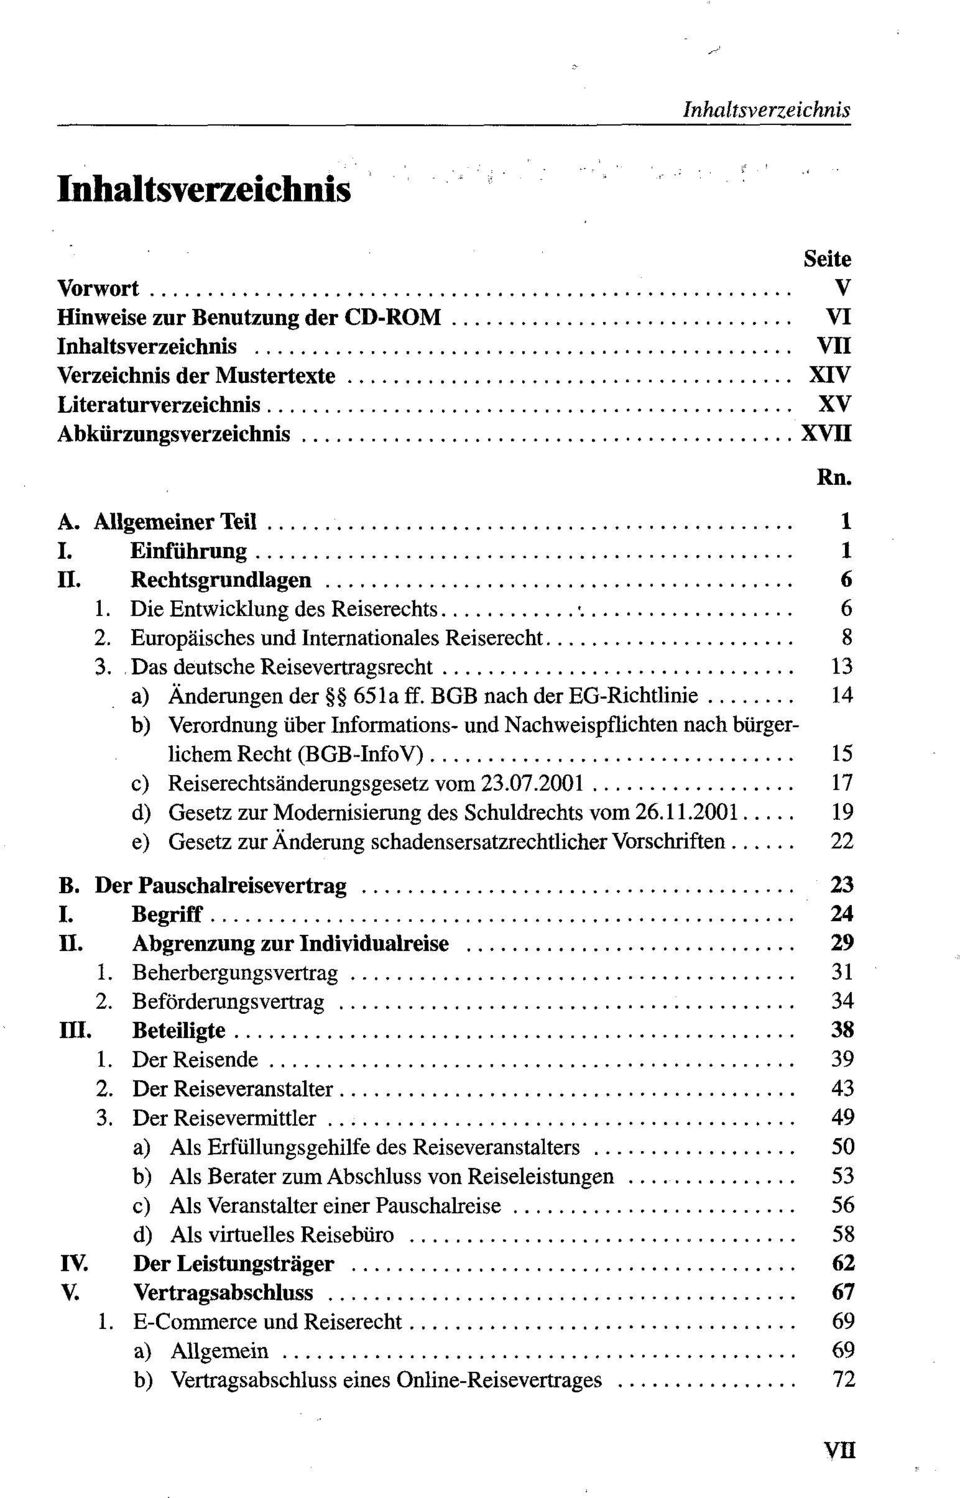 Das deutsche Reisevertragsrecht 13 a) Änderungen der 651a ff.